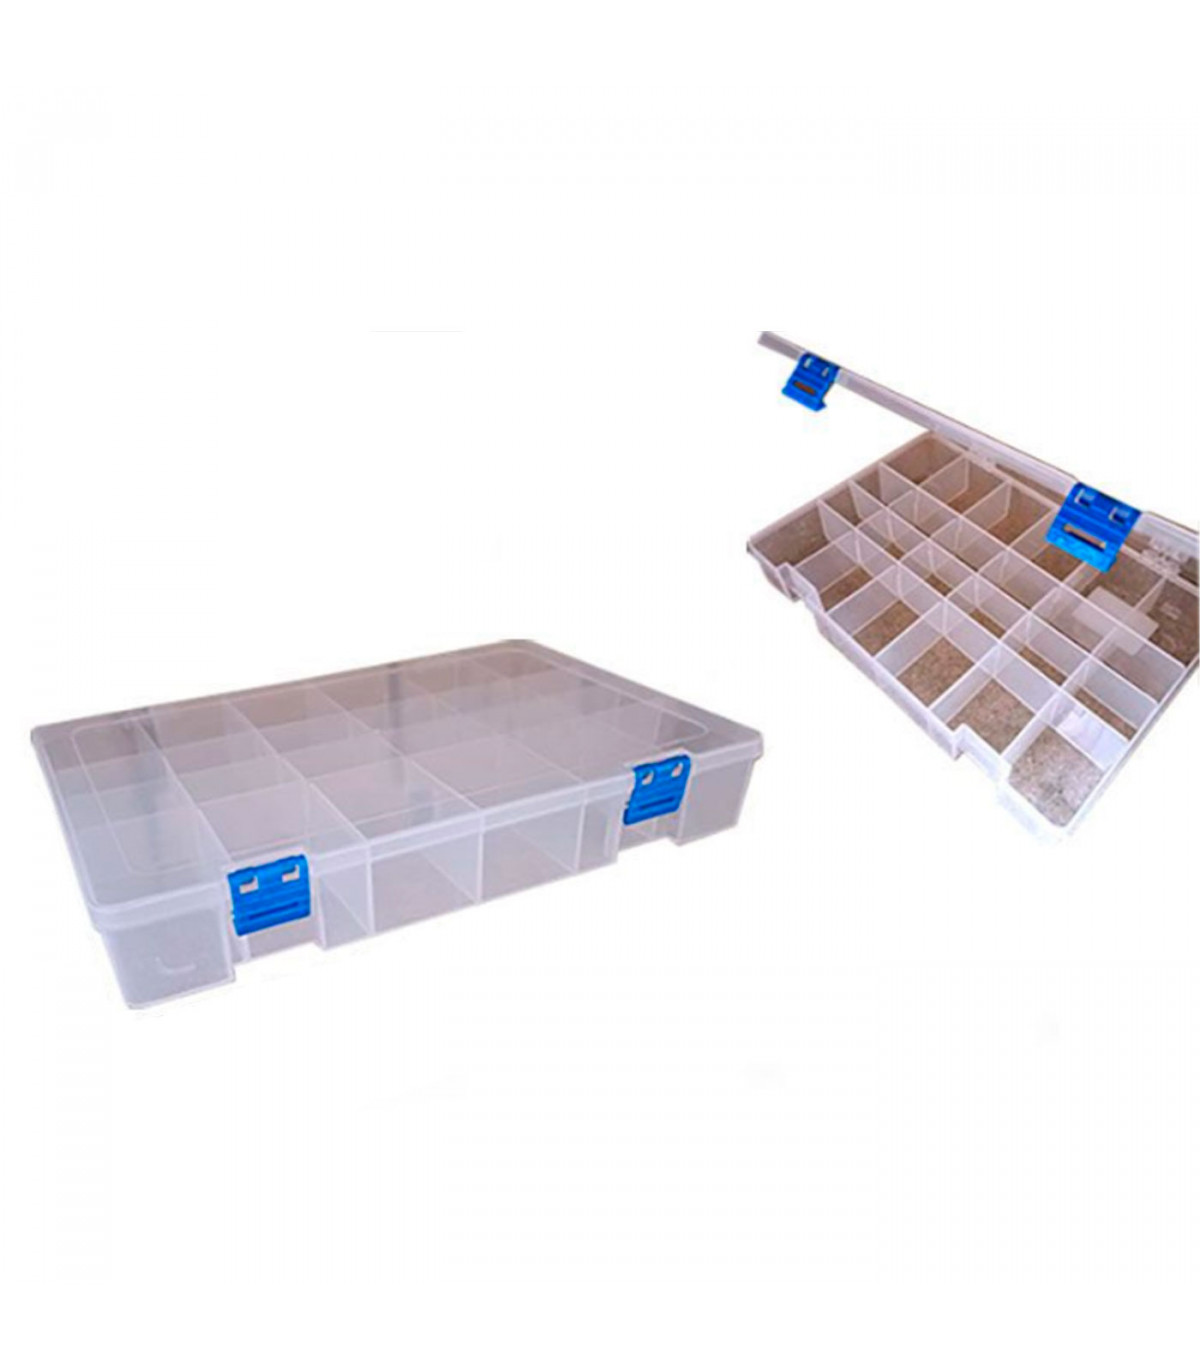 Tradineur - Caja organizadora con separadores, 2 niveles, 16 compartimentos,  plástico, almacenaje de tornillos, tuercas, accesor